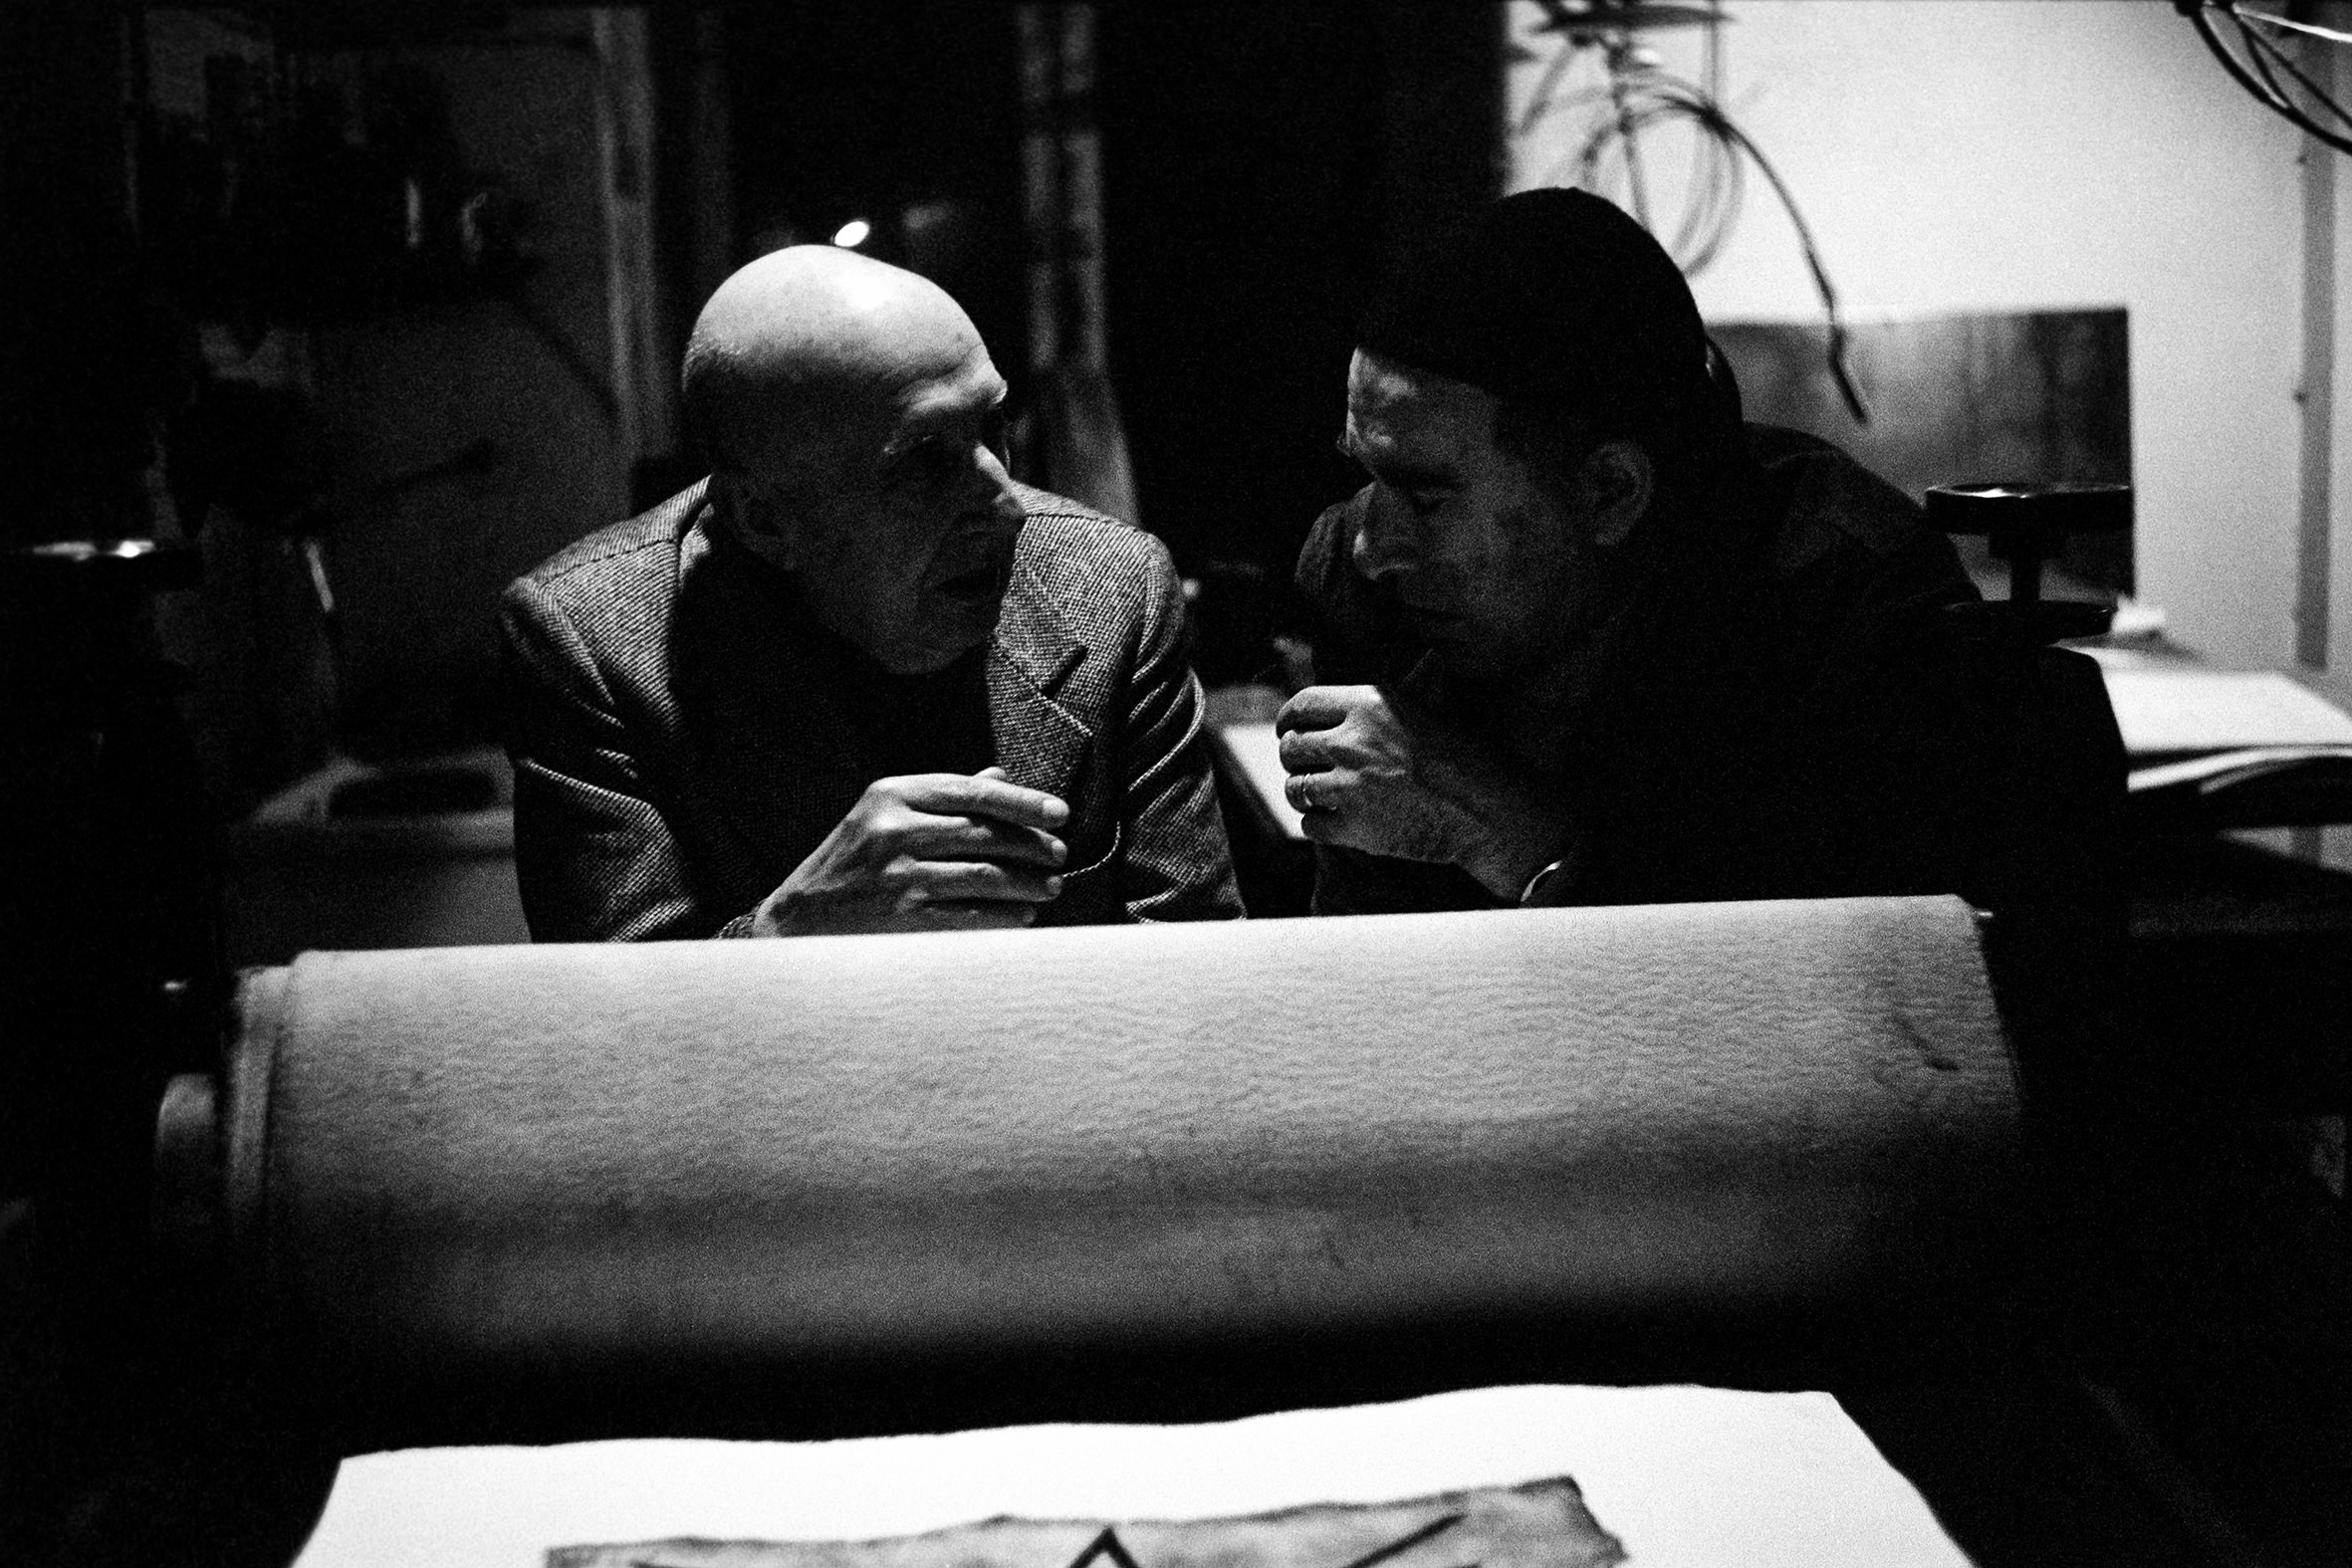 ARTISTI - 9 – Fausto Melotti e Nino Franchina, Milano, anni ‘70